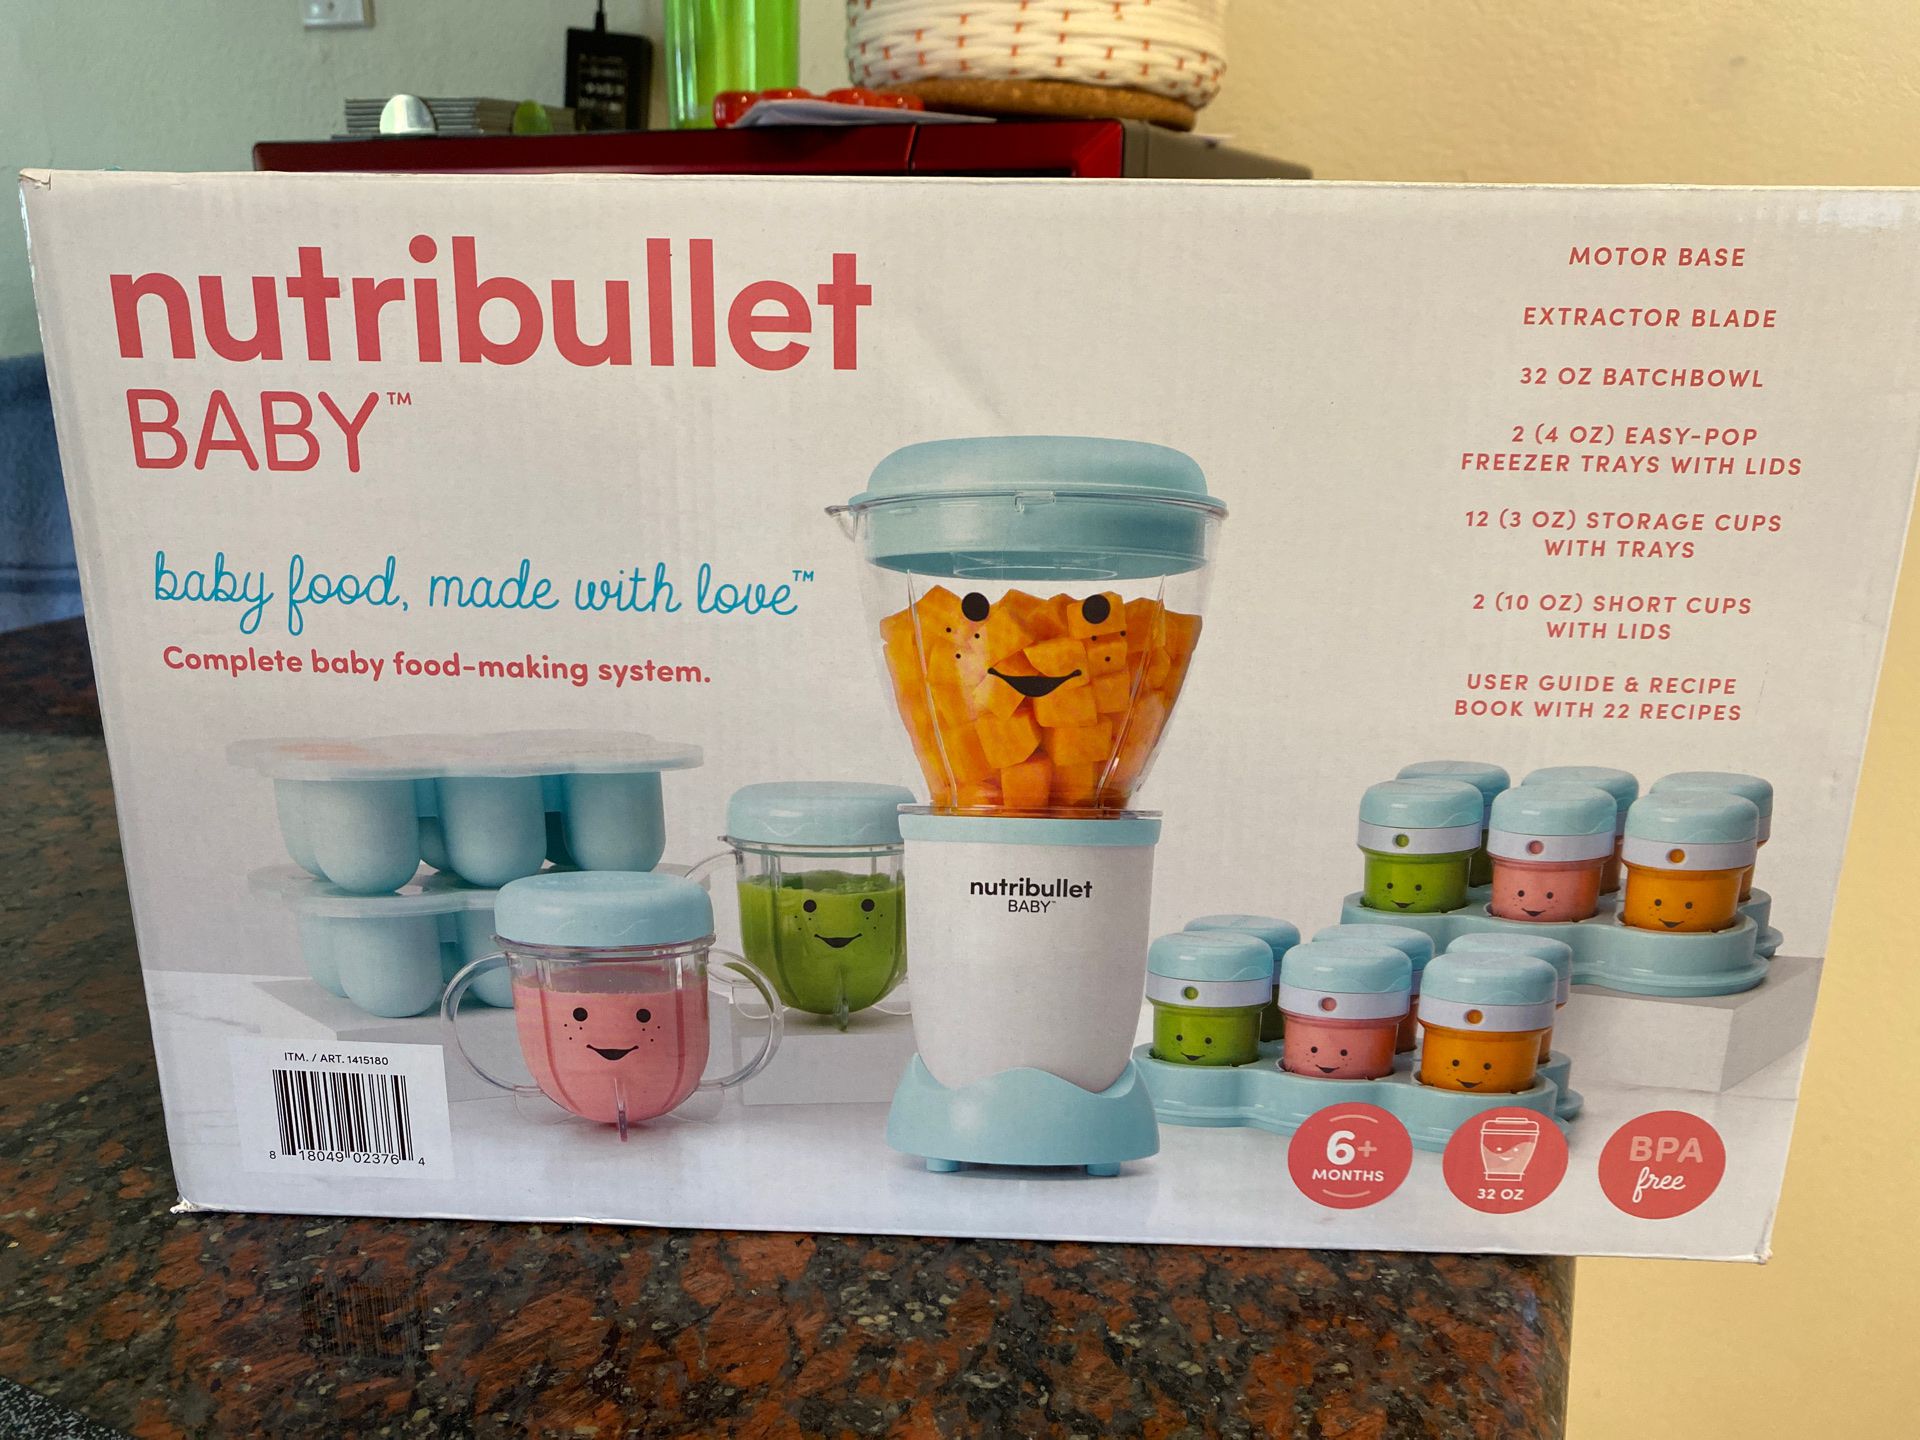 Baby Nutribullet (BRAND NEW IN BOX NEVER USED)